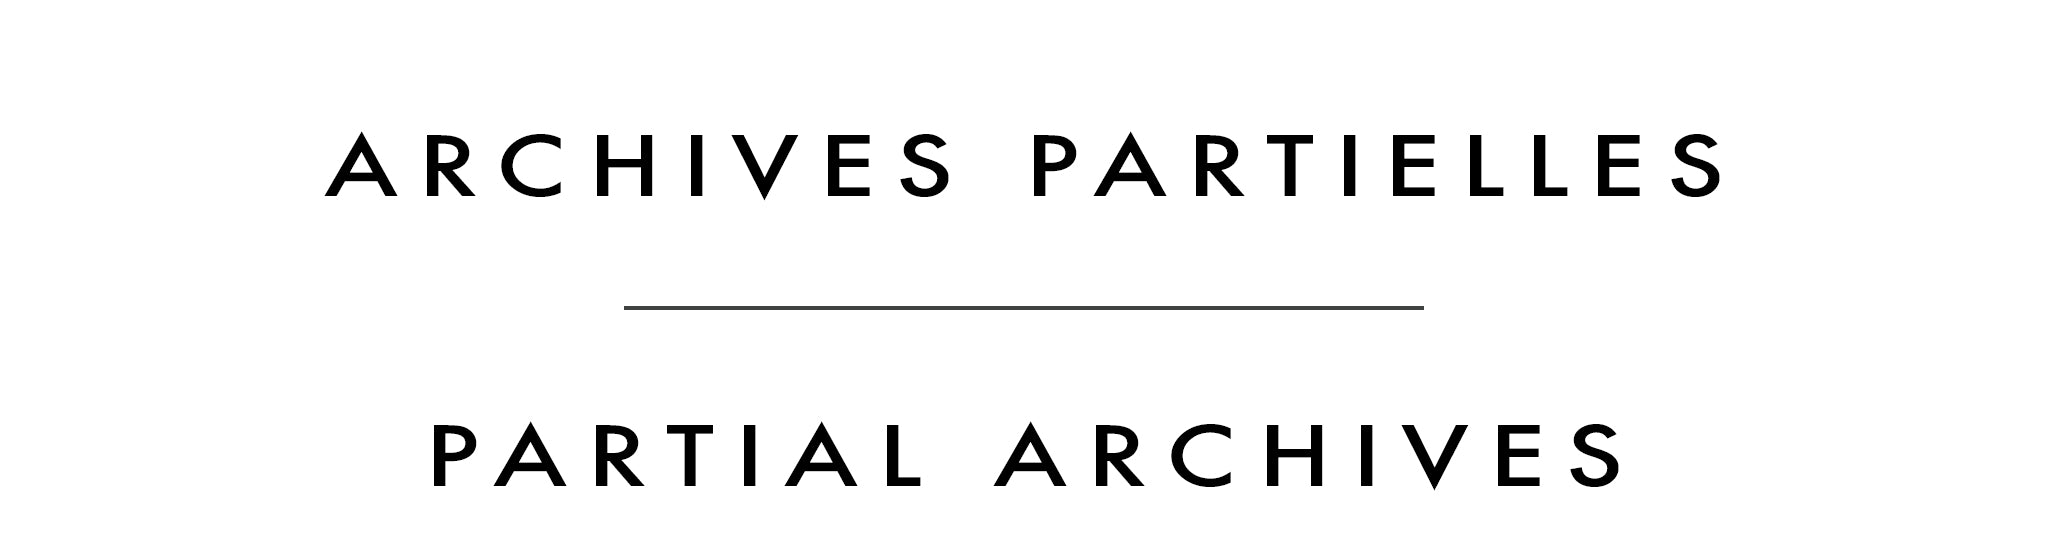 Archives partielles | Partial Archives | Jordan Hicks